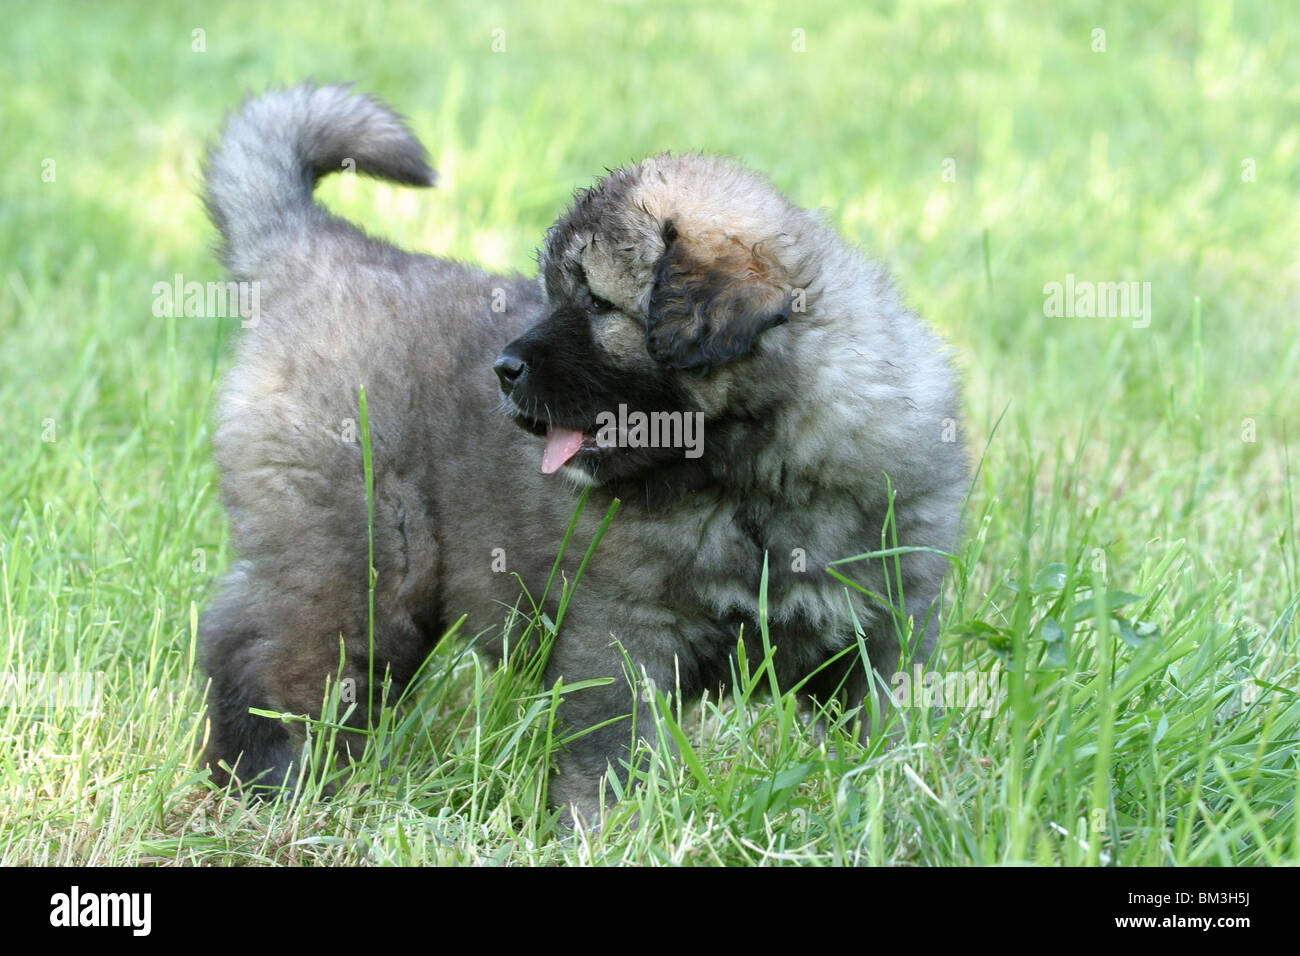 stehender Kaukasischer Schäferhund Welpe / standing caucasian owtcharka puppy Stock Photo